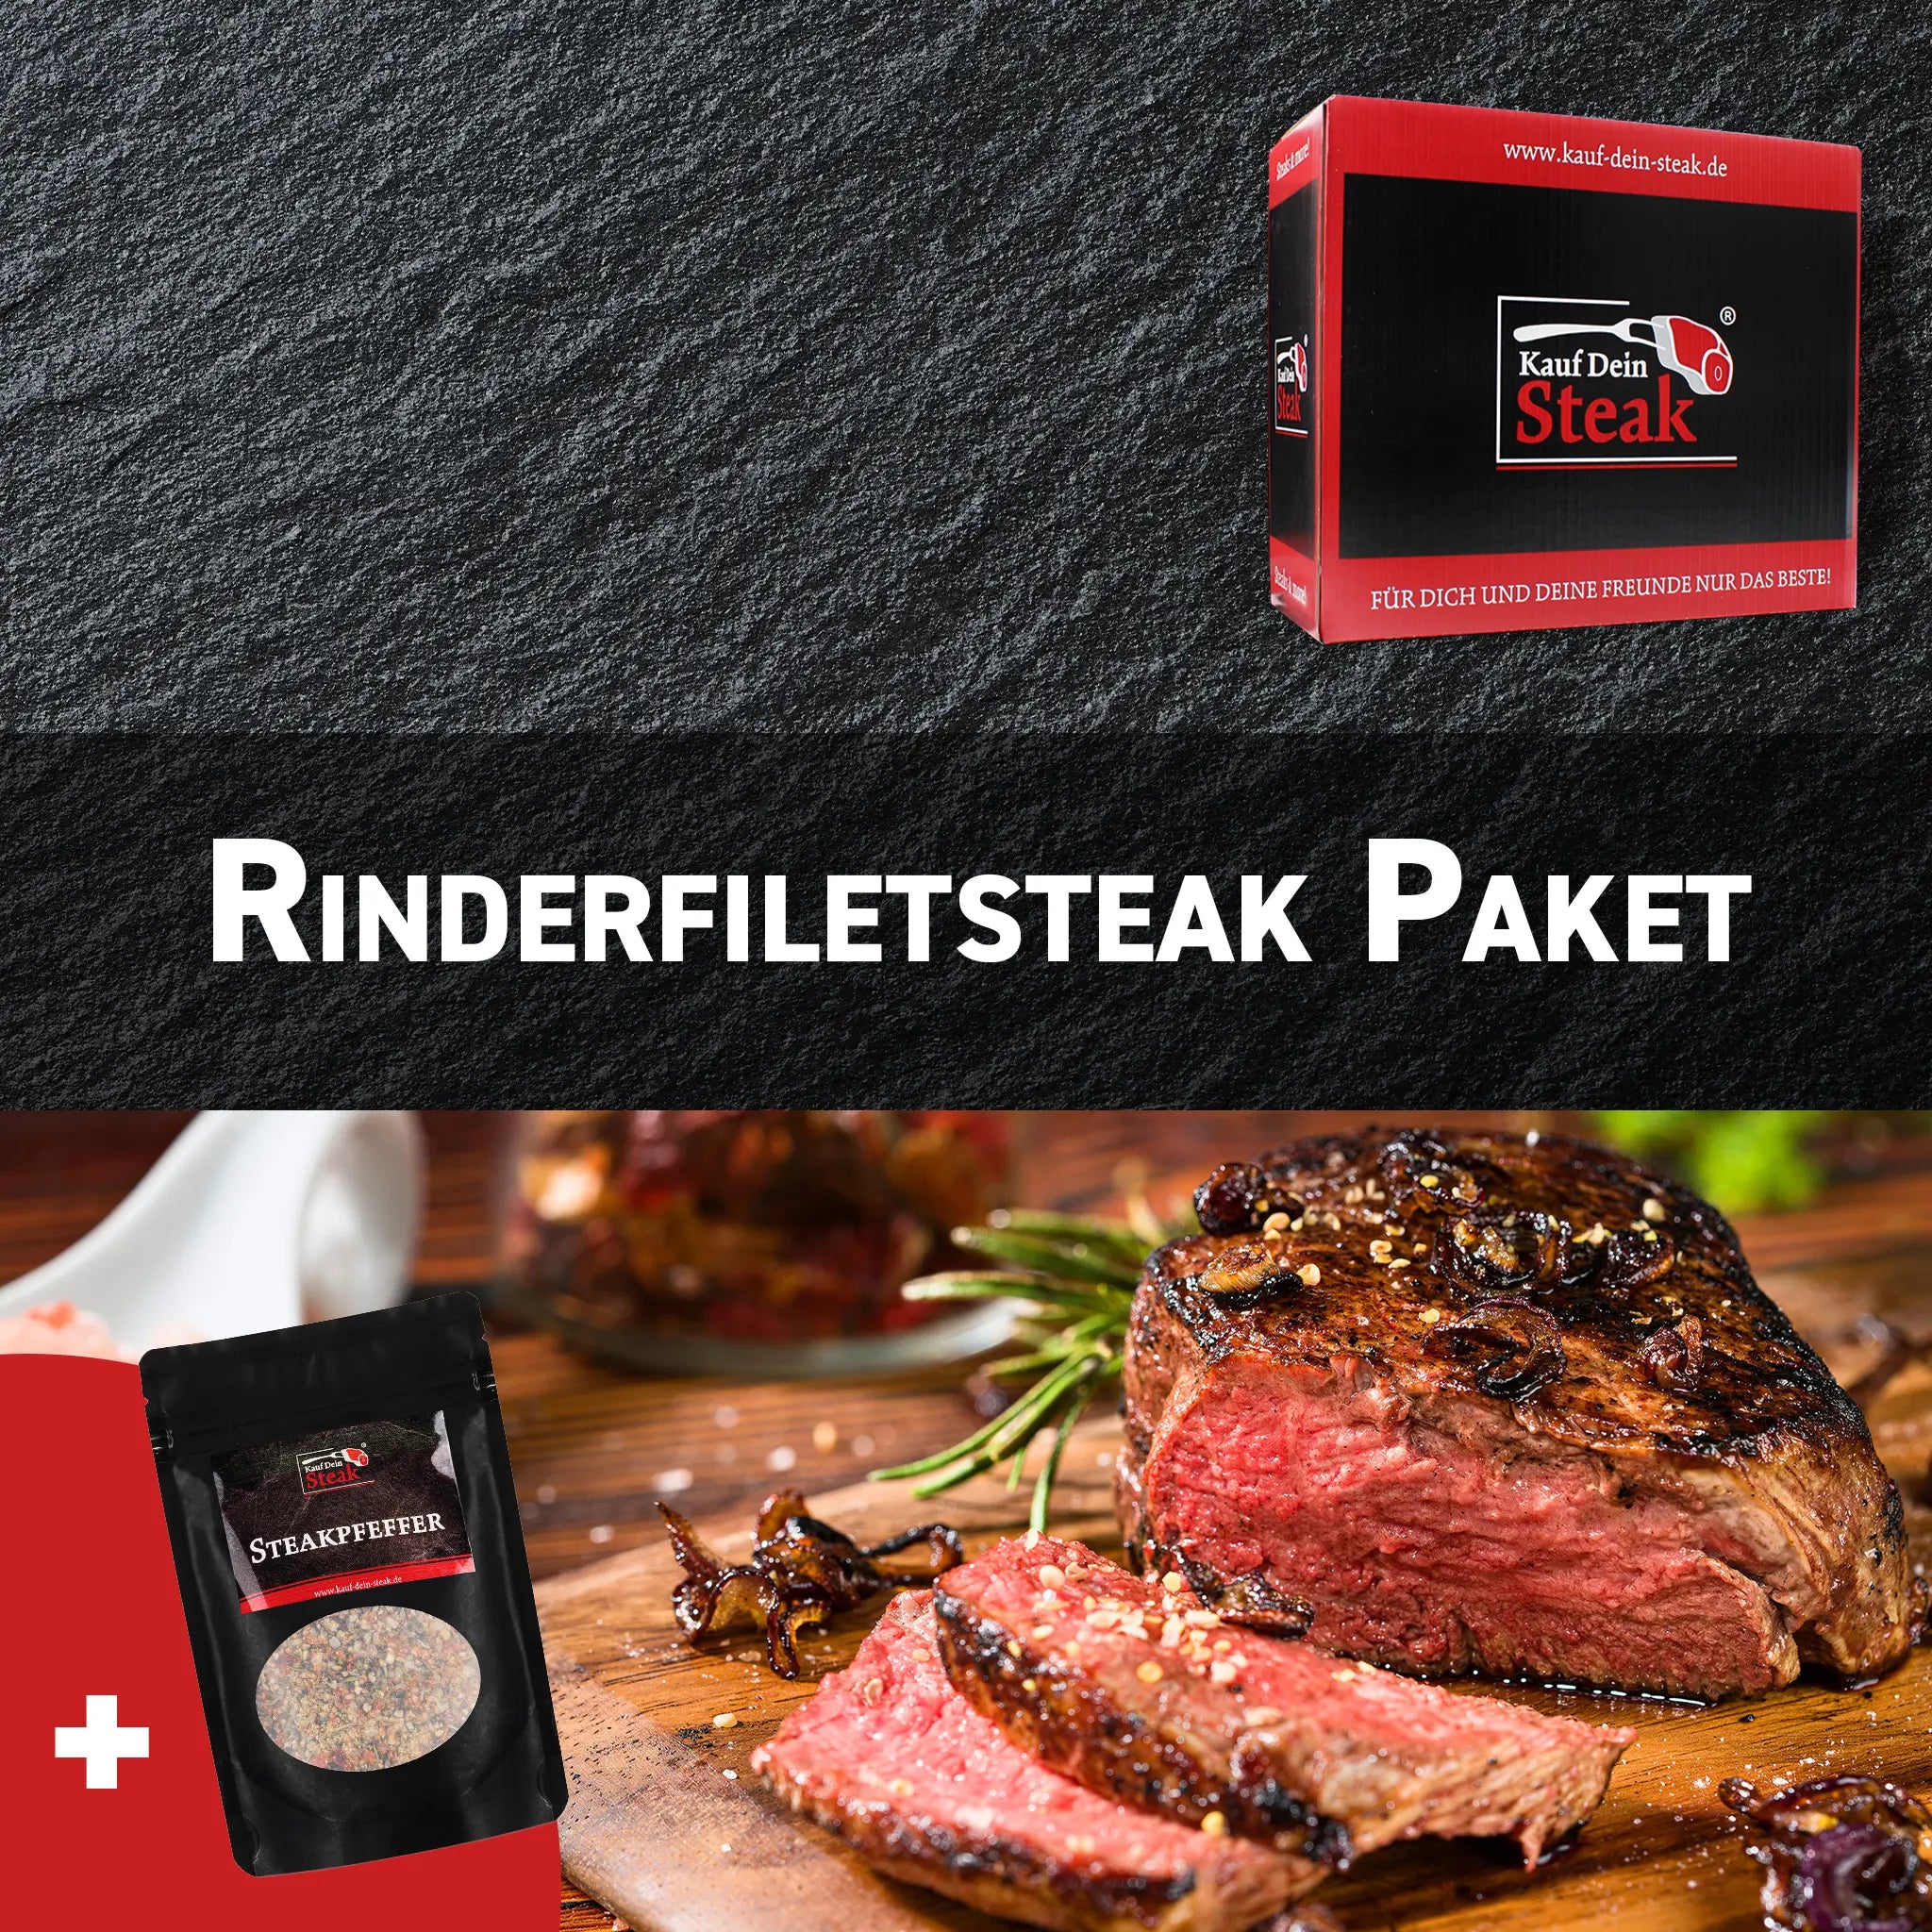 6 x Rinderfiletsteak + Steakpfeffer